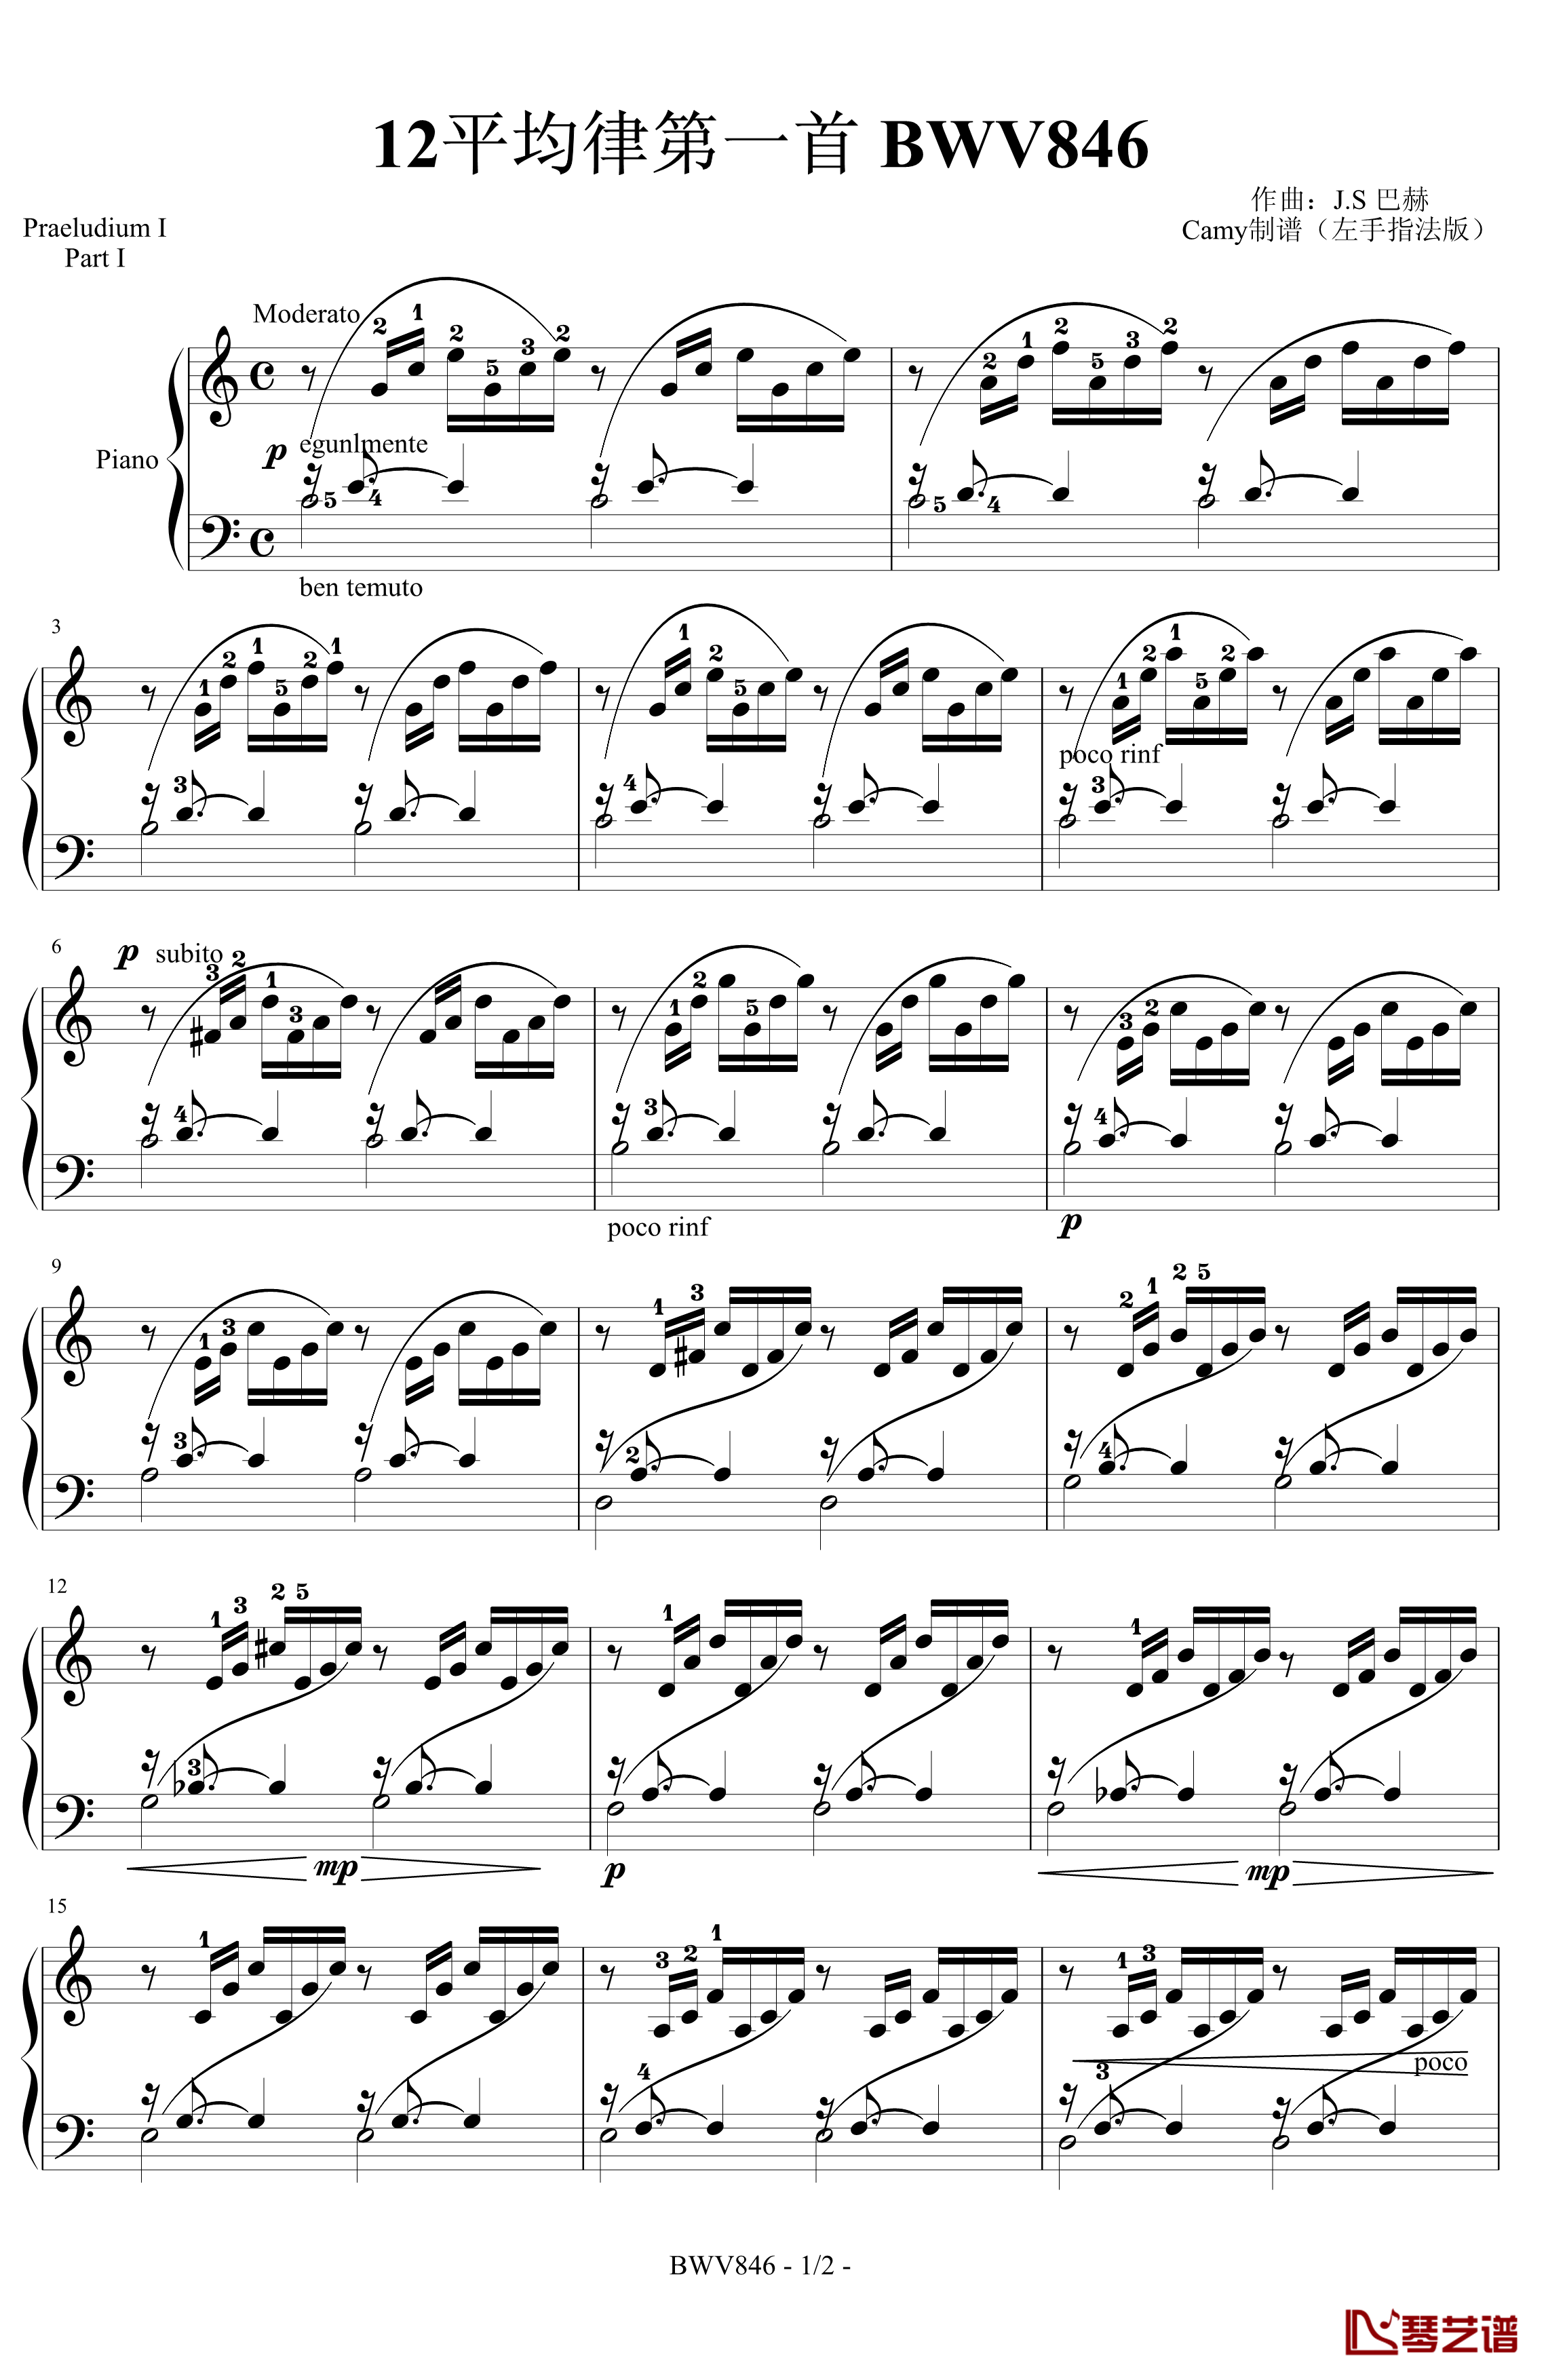 12平均律第一首钢琴谱-带指法-巴赫-P.E.Bach1